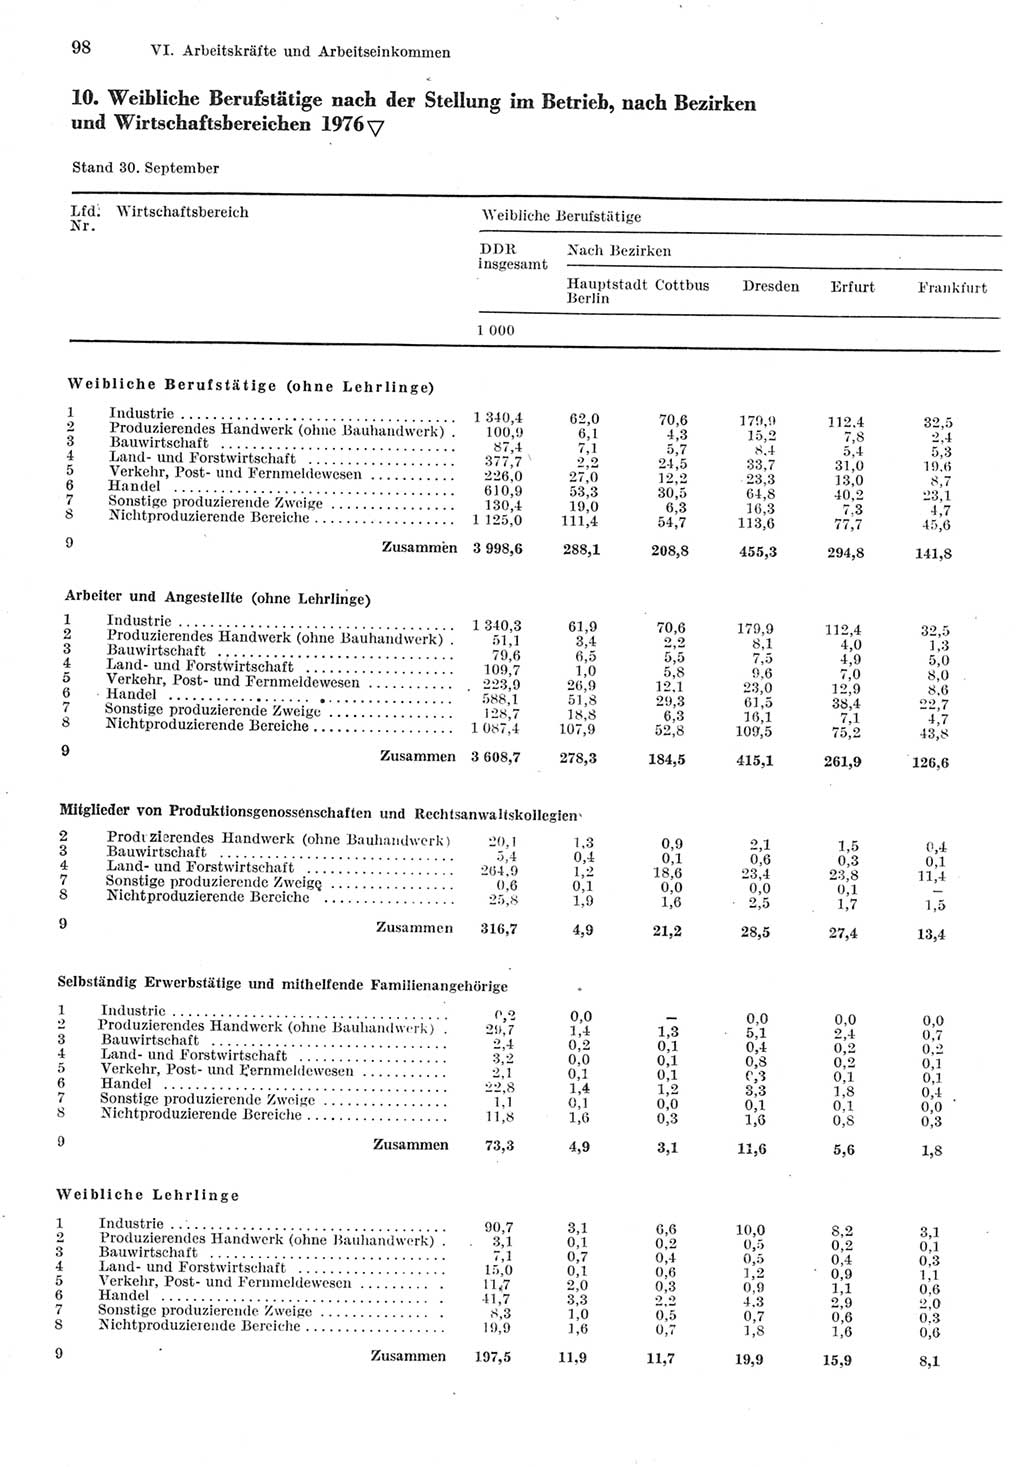 Statistisches Jahrbuch der Deutschen Demokratischen Republik (DDR) 1977, Seite 98 (Stat. Jb. DDR 1977, S. 98)